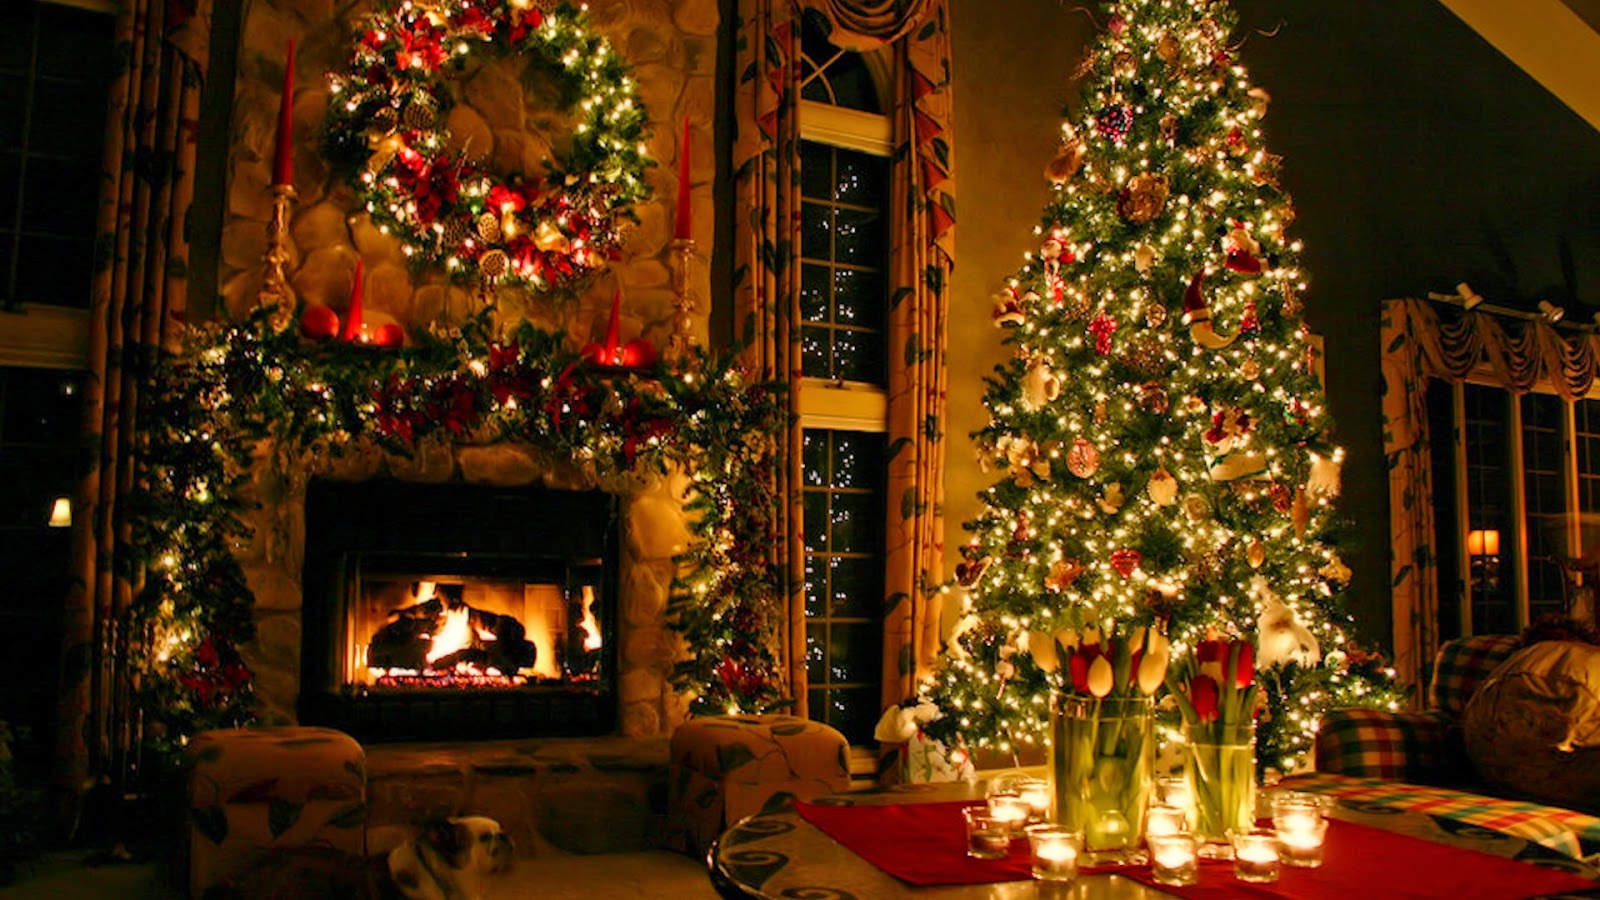 navidad fondos de pantalla en vivo gratis,navidad,árbol de navidad,decoración navideña,decoración navideña,nochebuena